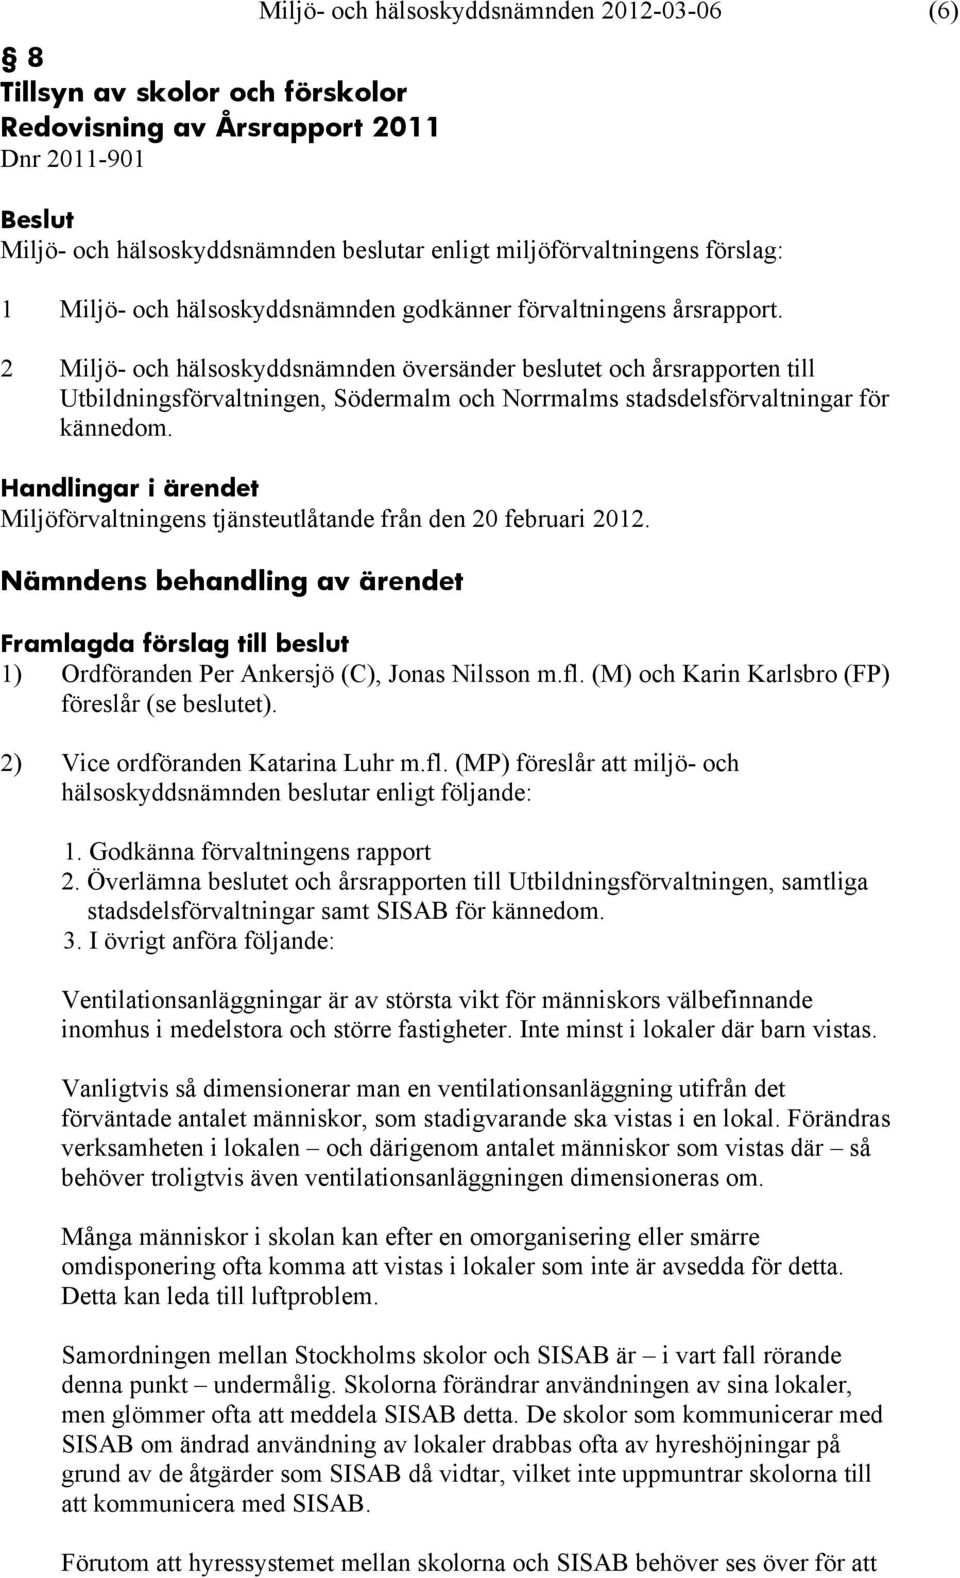 Miljöförvaltningens tjänsteutlåtande från den 20 februari 2012. 1) Ordföranden Per Ankersjö (C), Jonas Nilsson m.fl. (M) och Karin Karlsbro (FP) föreslår (se beslutet).